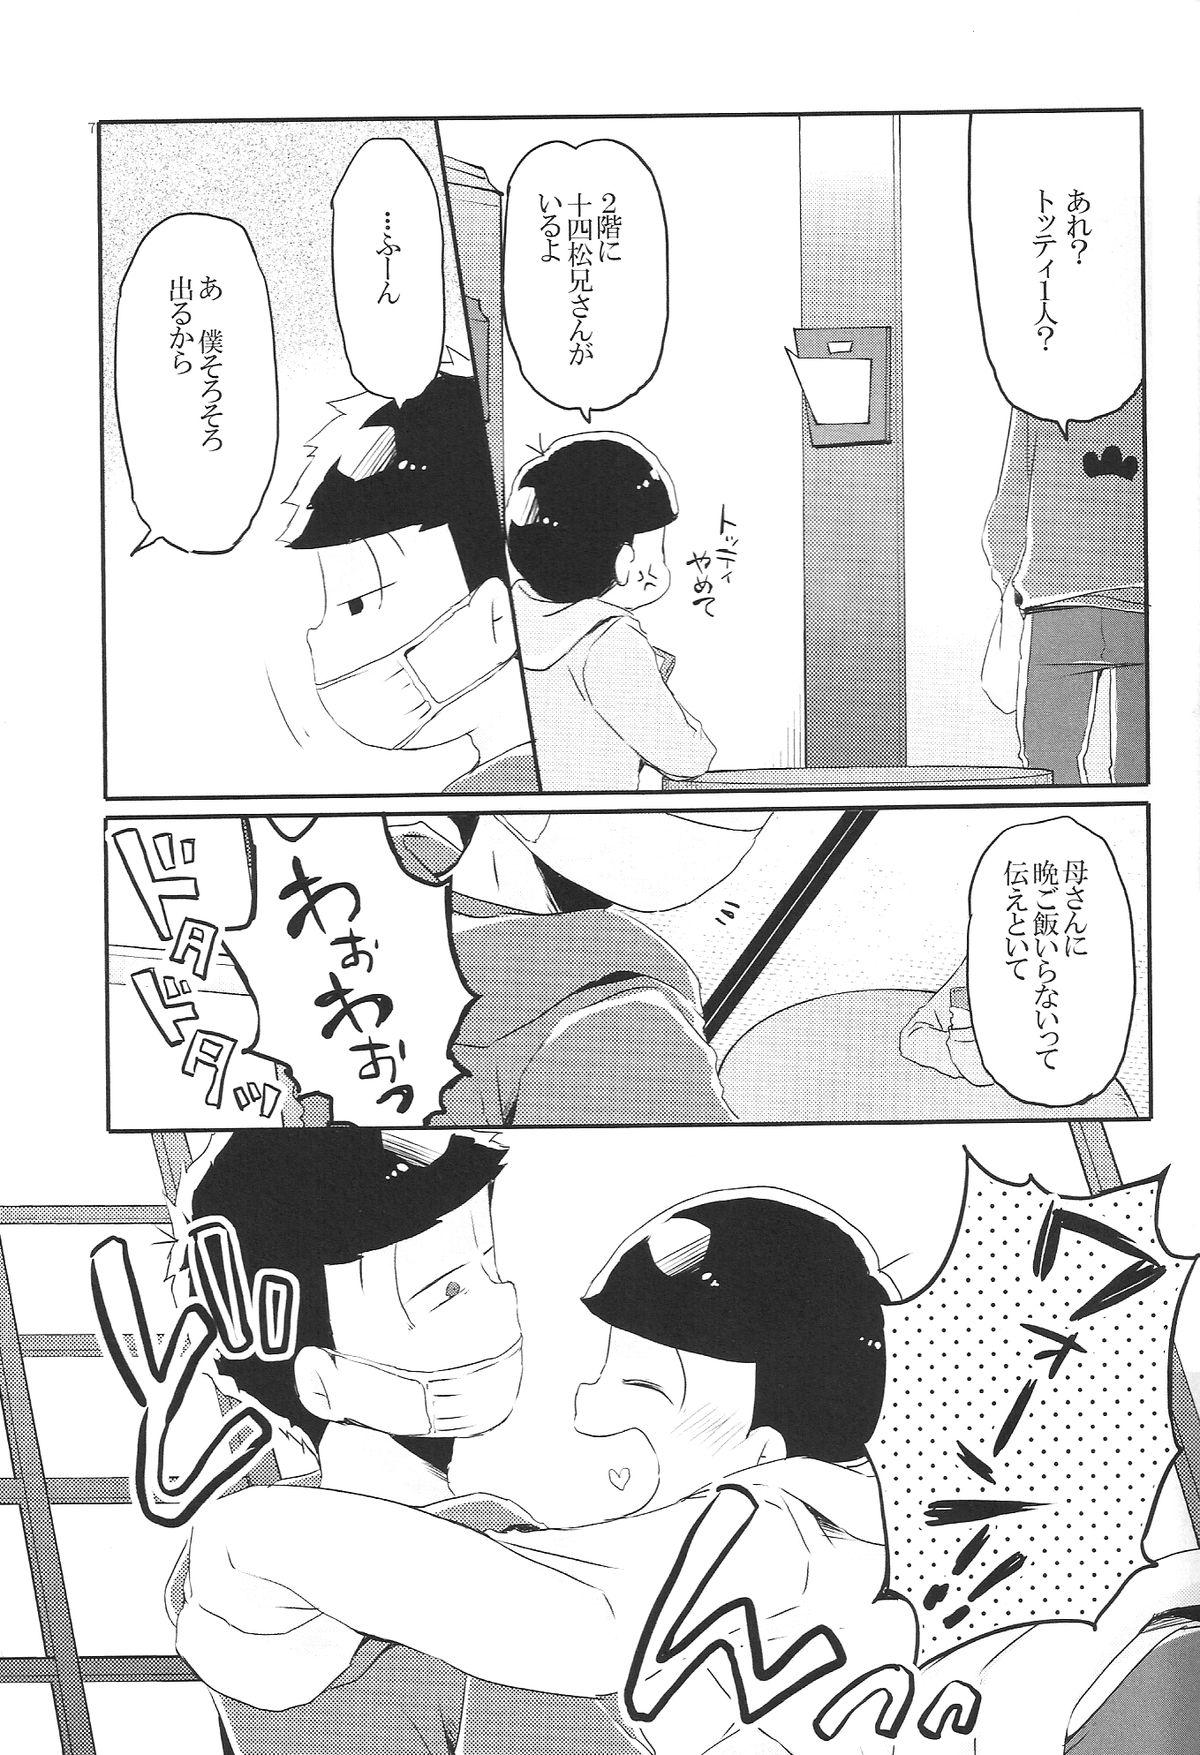 Jerking Off Inu no Kimochi Neko no Kimochi Boku no Kimochi - Osomatsu-san Ballbusting - Page 6